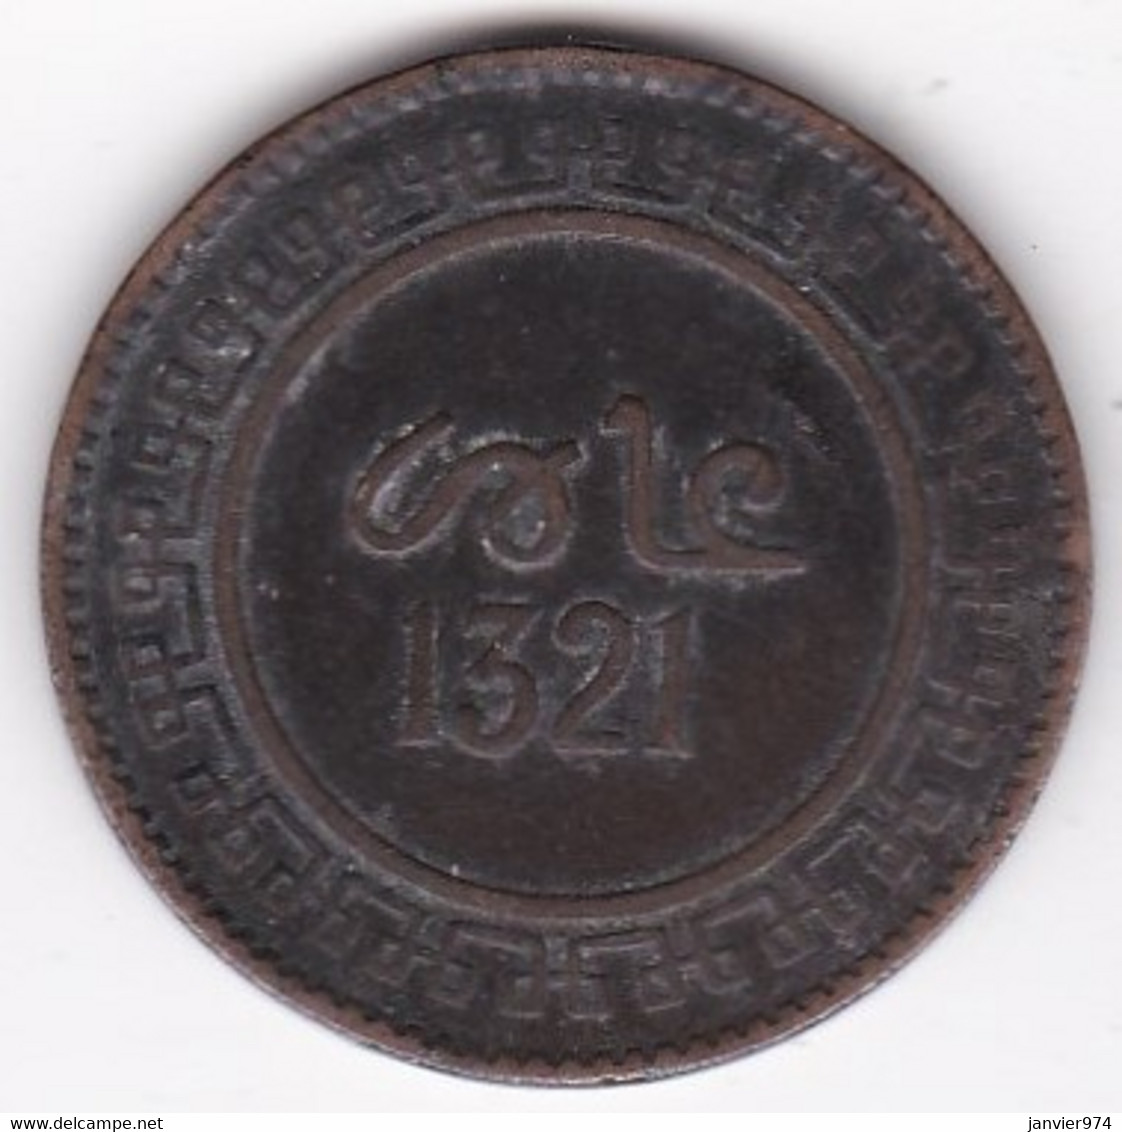 Protectorat Français 10 Mouzounas HA 1321 - 1903 Birmingham. Frappe Médaille. Bronze , Lec# 87 - Maroc